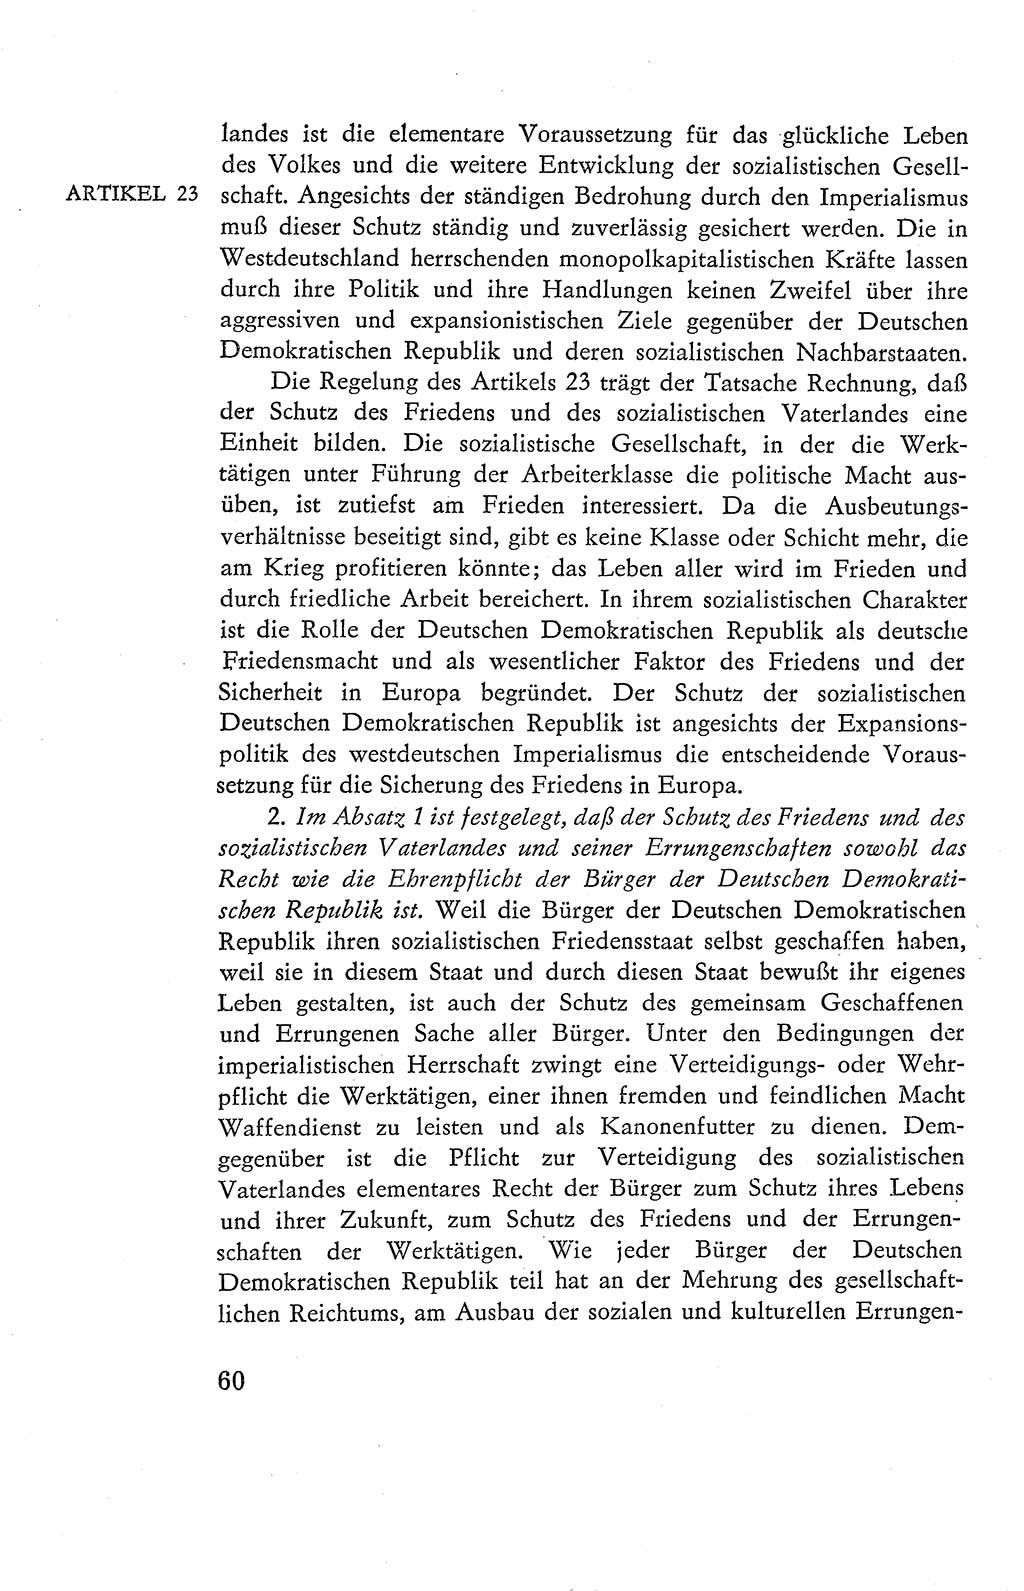 Verfassung der Deutschen Demokratischen Republik (DDR), Dokumente, Kommentar 1969, Band 2, Seite 60 (Verf. DDR Dok. Komm. 1969, Bd. 2, S. 60)